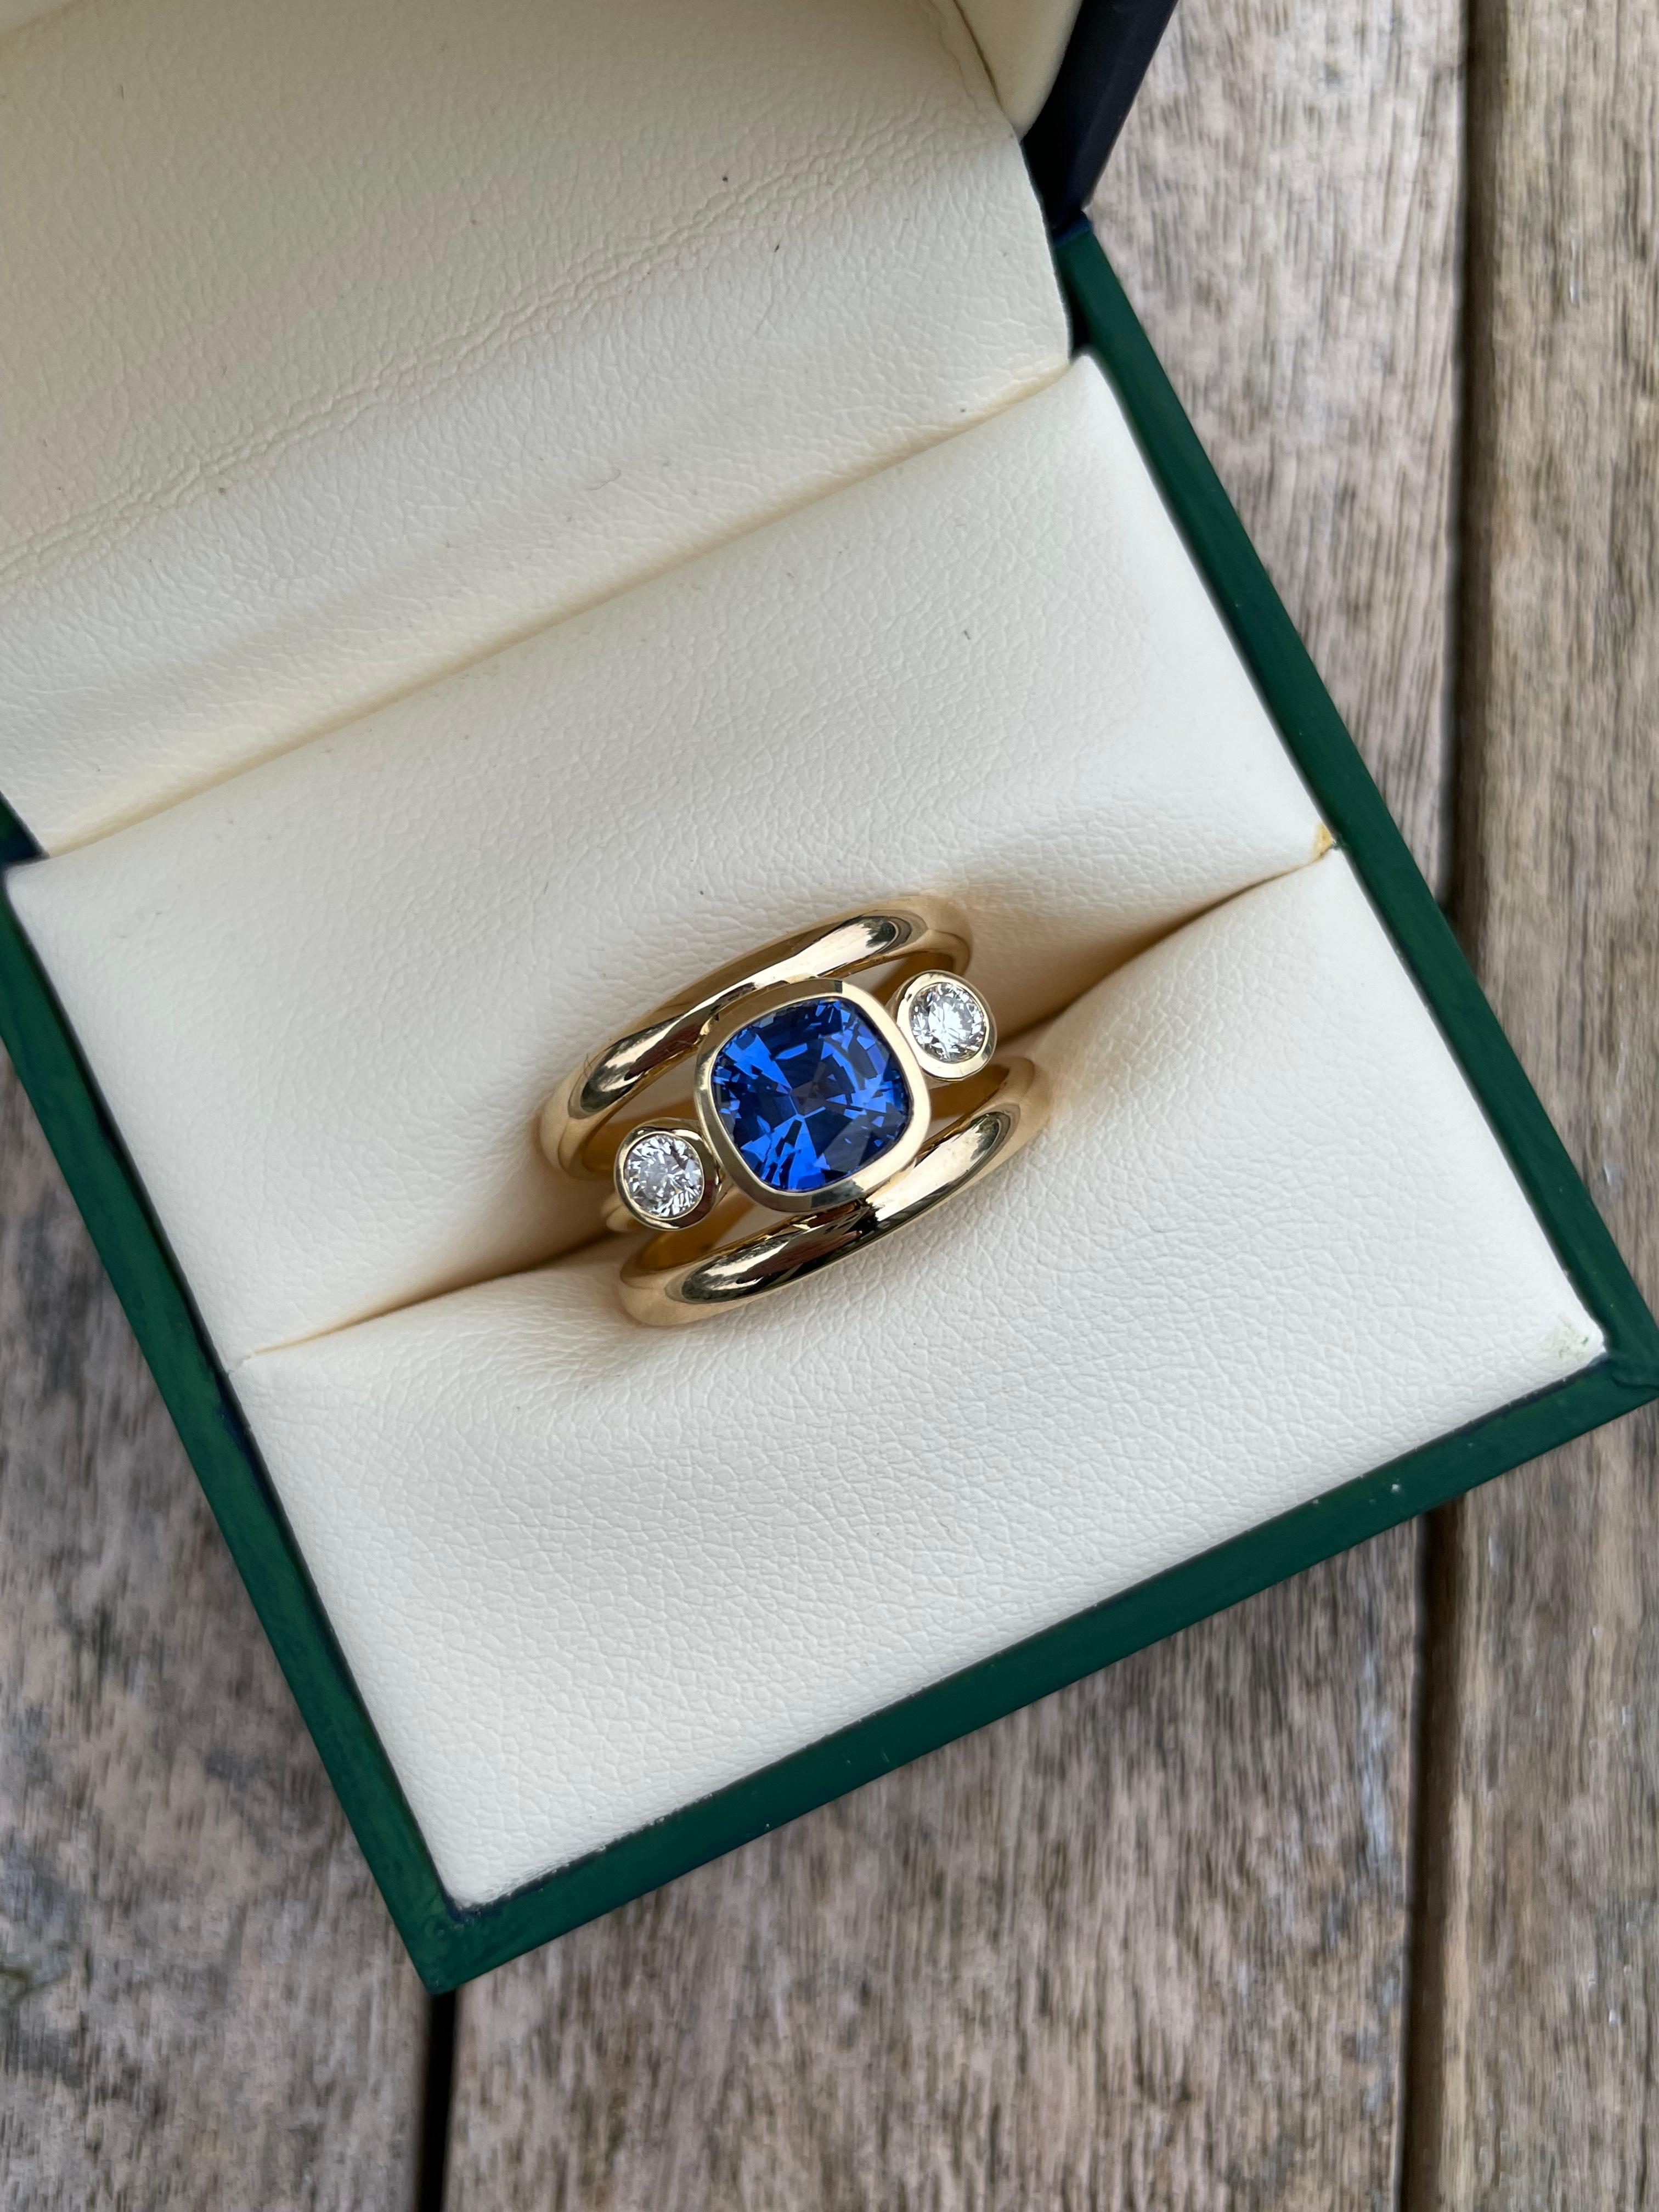  Minka Jewels - Dieser schöne und elegante 3-Band-Ring ist mit einem unglaublichen 2,35ct Sri Lanka, Royal Blue Sapphire besetzt.
Dieser außergewöhnliche Saphir ist auf beiden Seiten mit einem Diamanten besetzt und in 18 Karat Gelbgold gefasst.